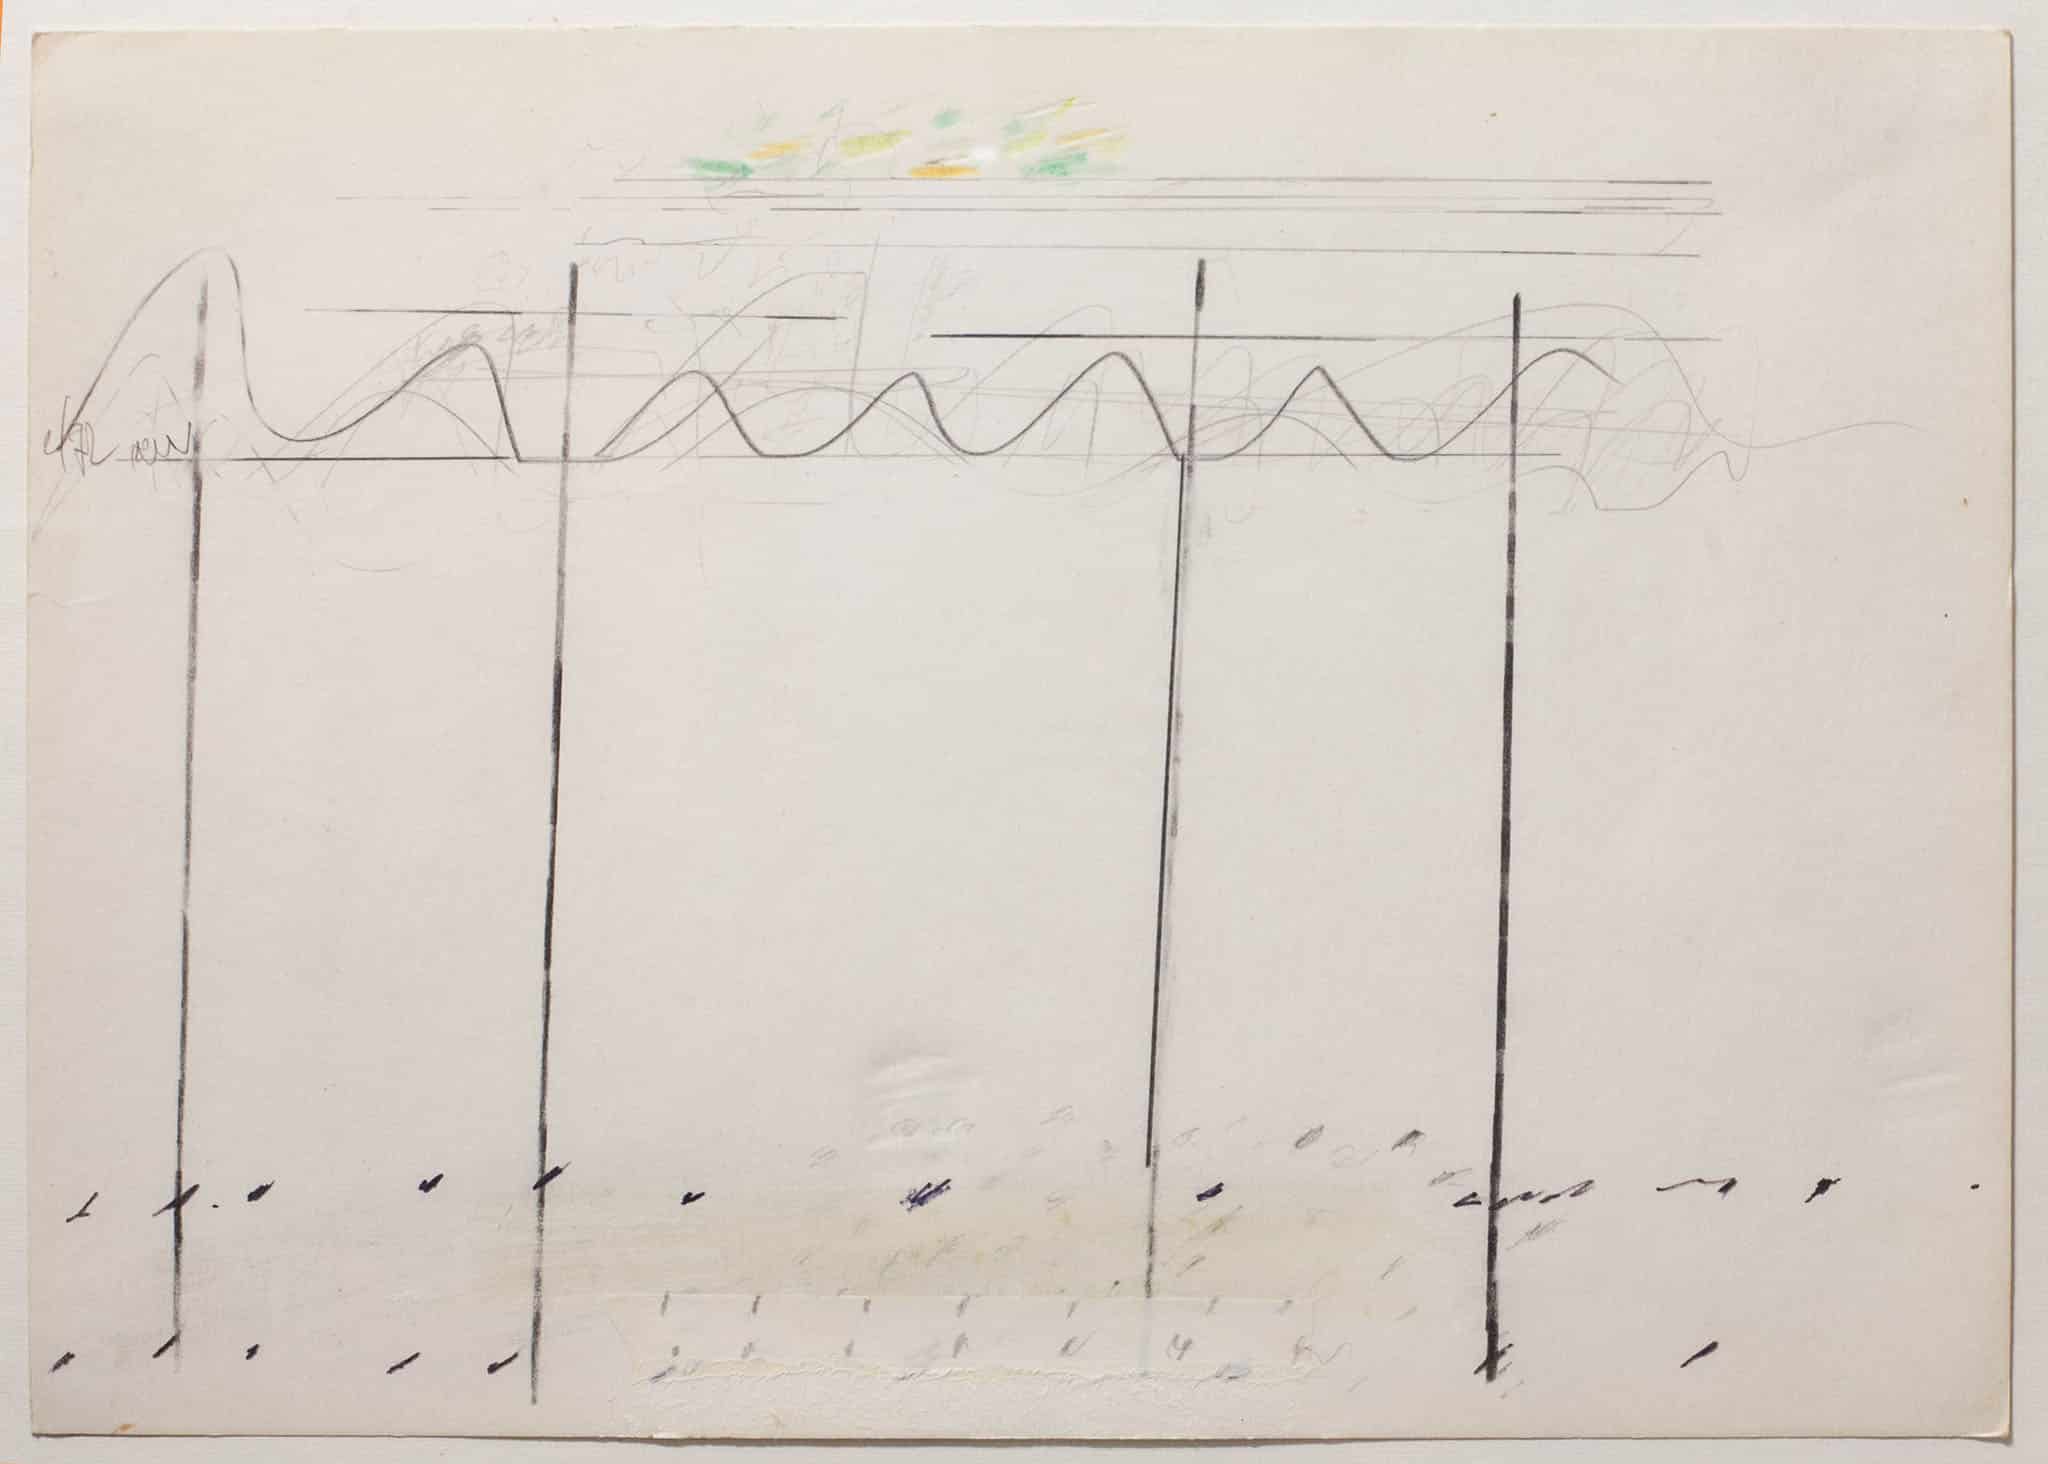 נחום טבת, 1971, עפרונות צבעוניים על נייר, 35x24 ס"מ